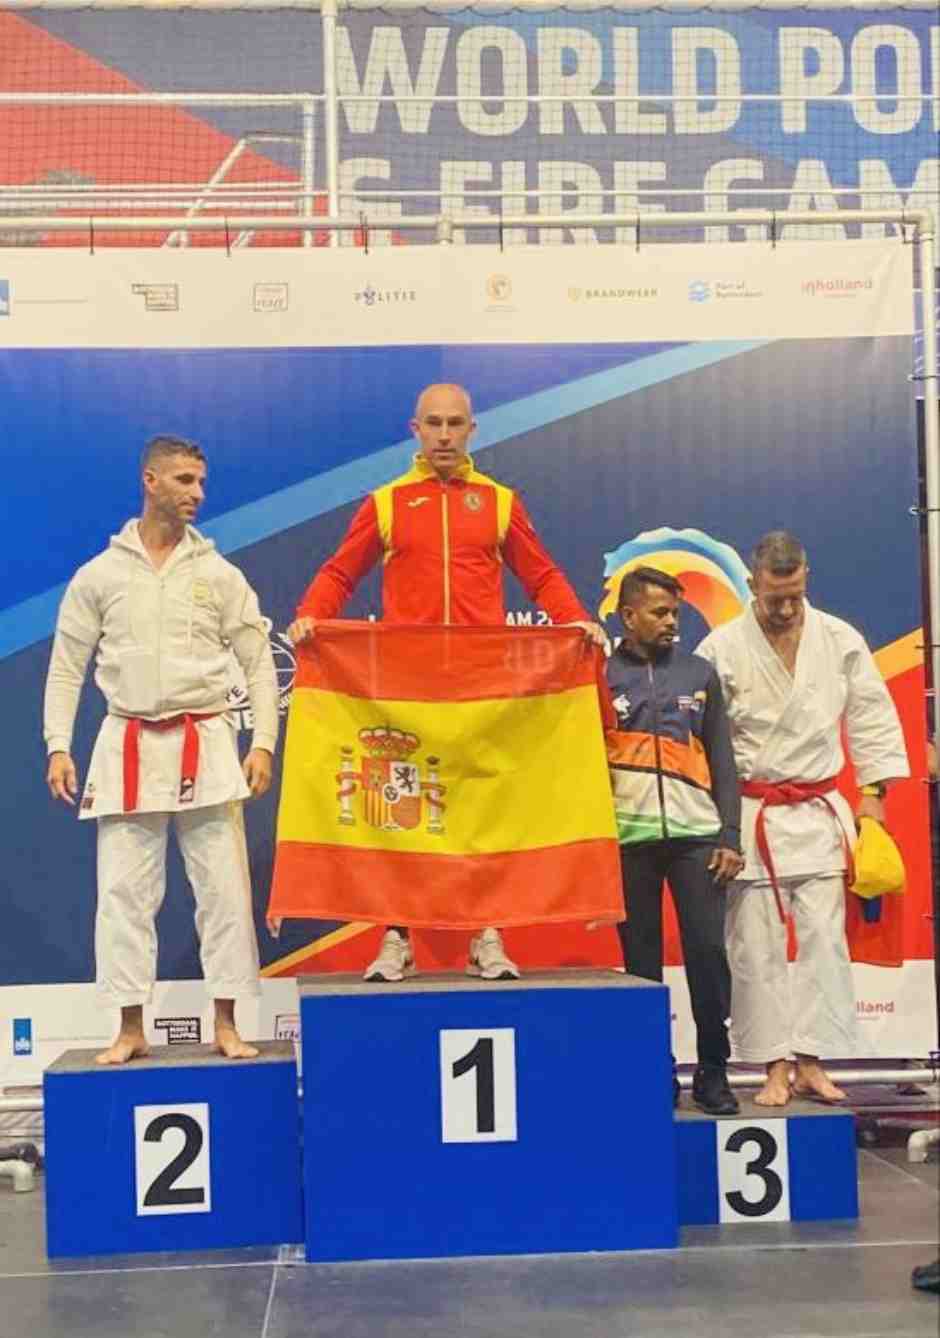 José Mateos, Policía Municipal de Móstoles, se trae un oro en karate de los Juegos Mundiales